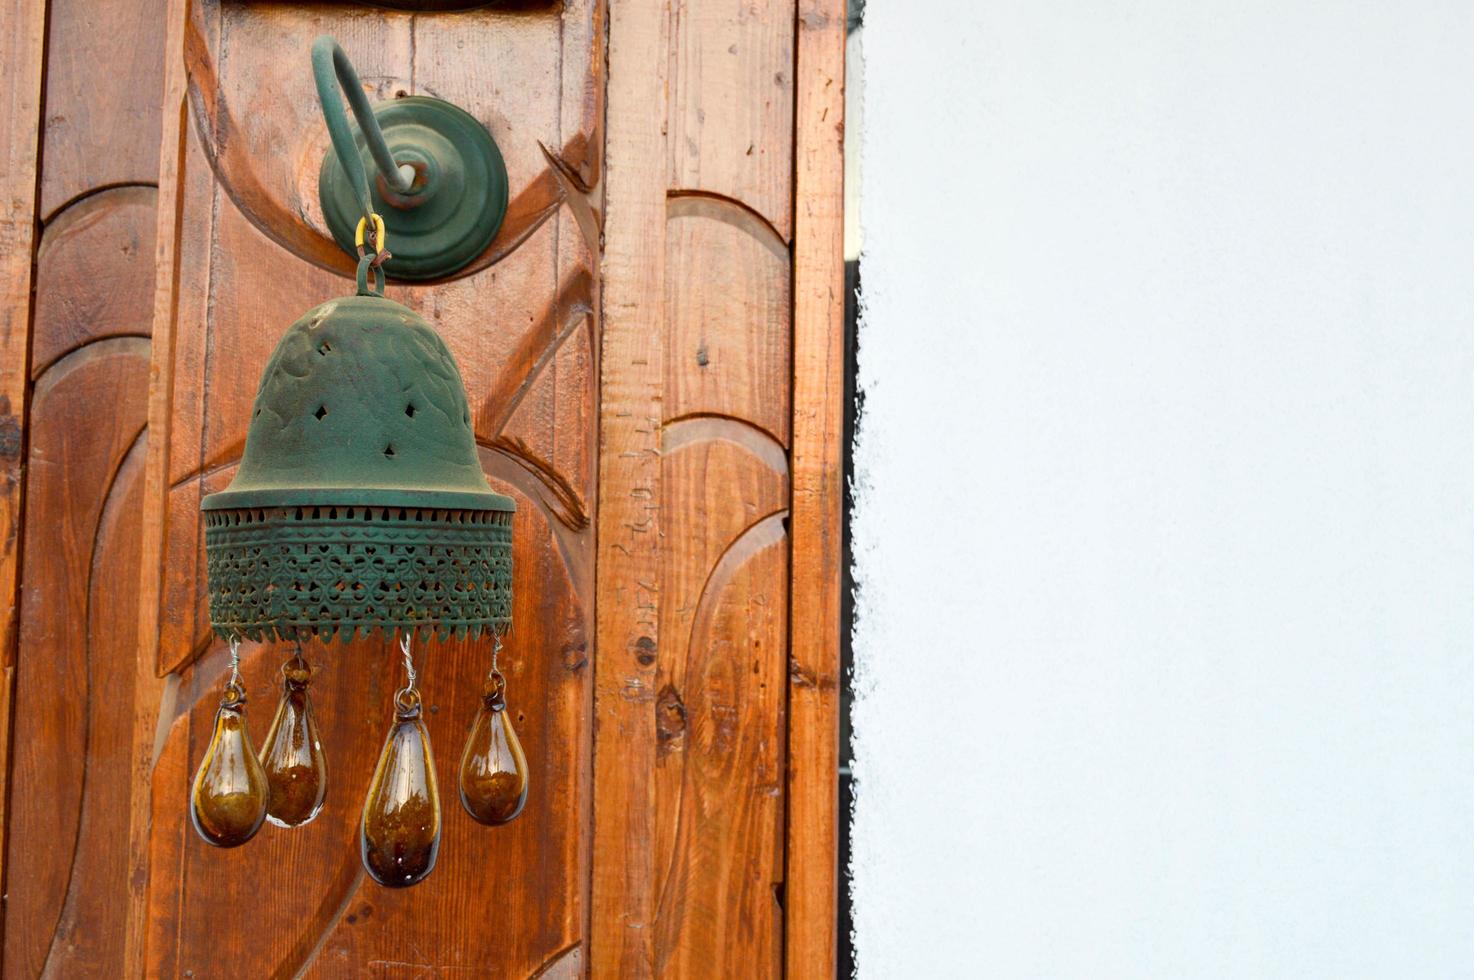 los bordes del campanario tradicional egipcio en el edificio con bolas de vidrio marrón están goteando. decoración islámica árabe islámica de edificios foto